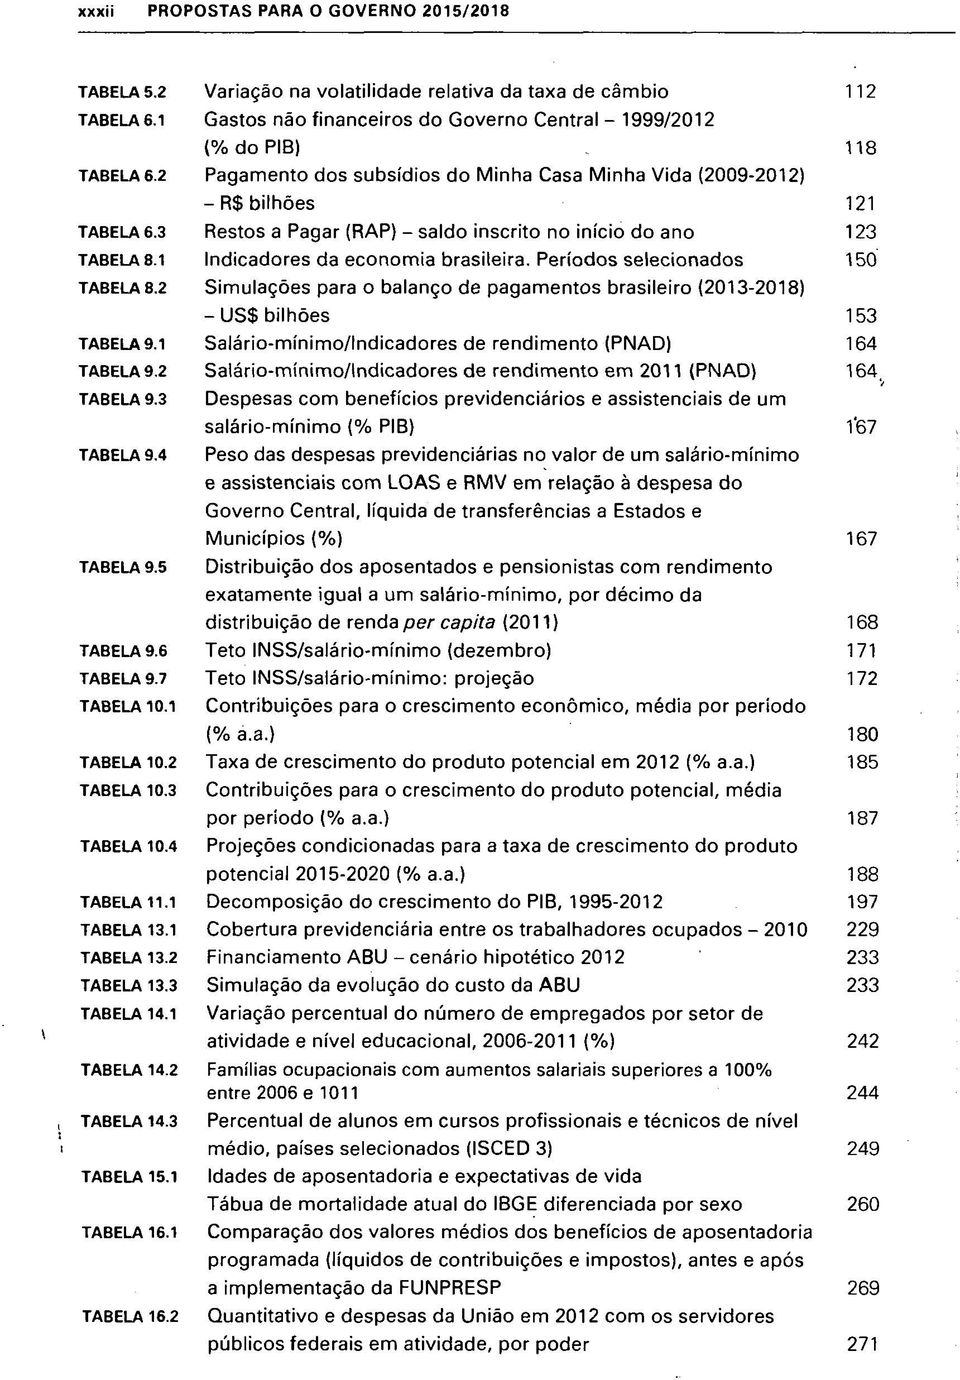 Períodos selecionados 150 TABELA 8.2 Simulações para o balanço de pagamentos brasileiro (2013-2018) -US$ bilhões 153 TABELA9.1 Salário-mínimo/lndicadores de rendimento (PNAD) 164 TABELA 9.